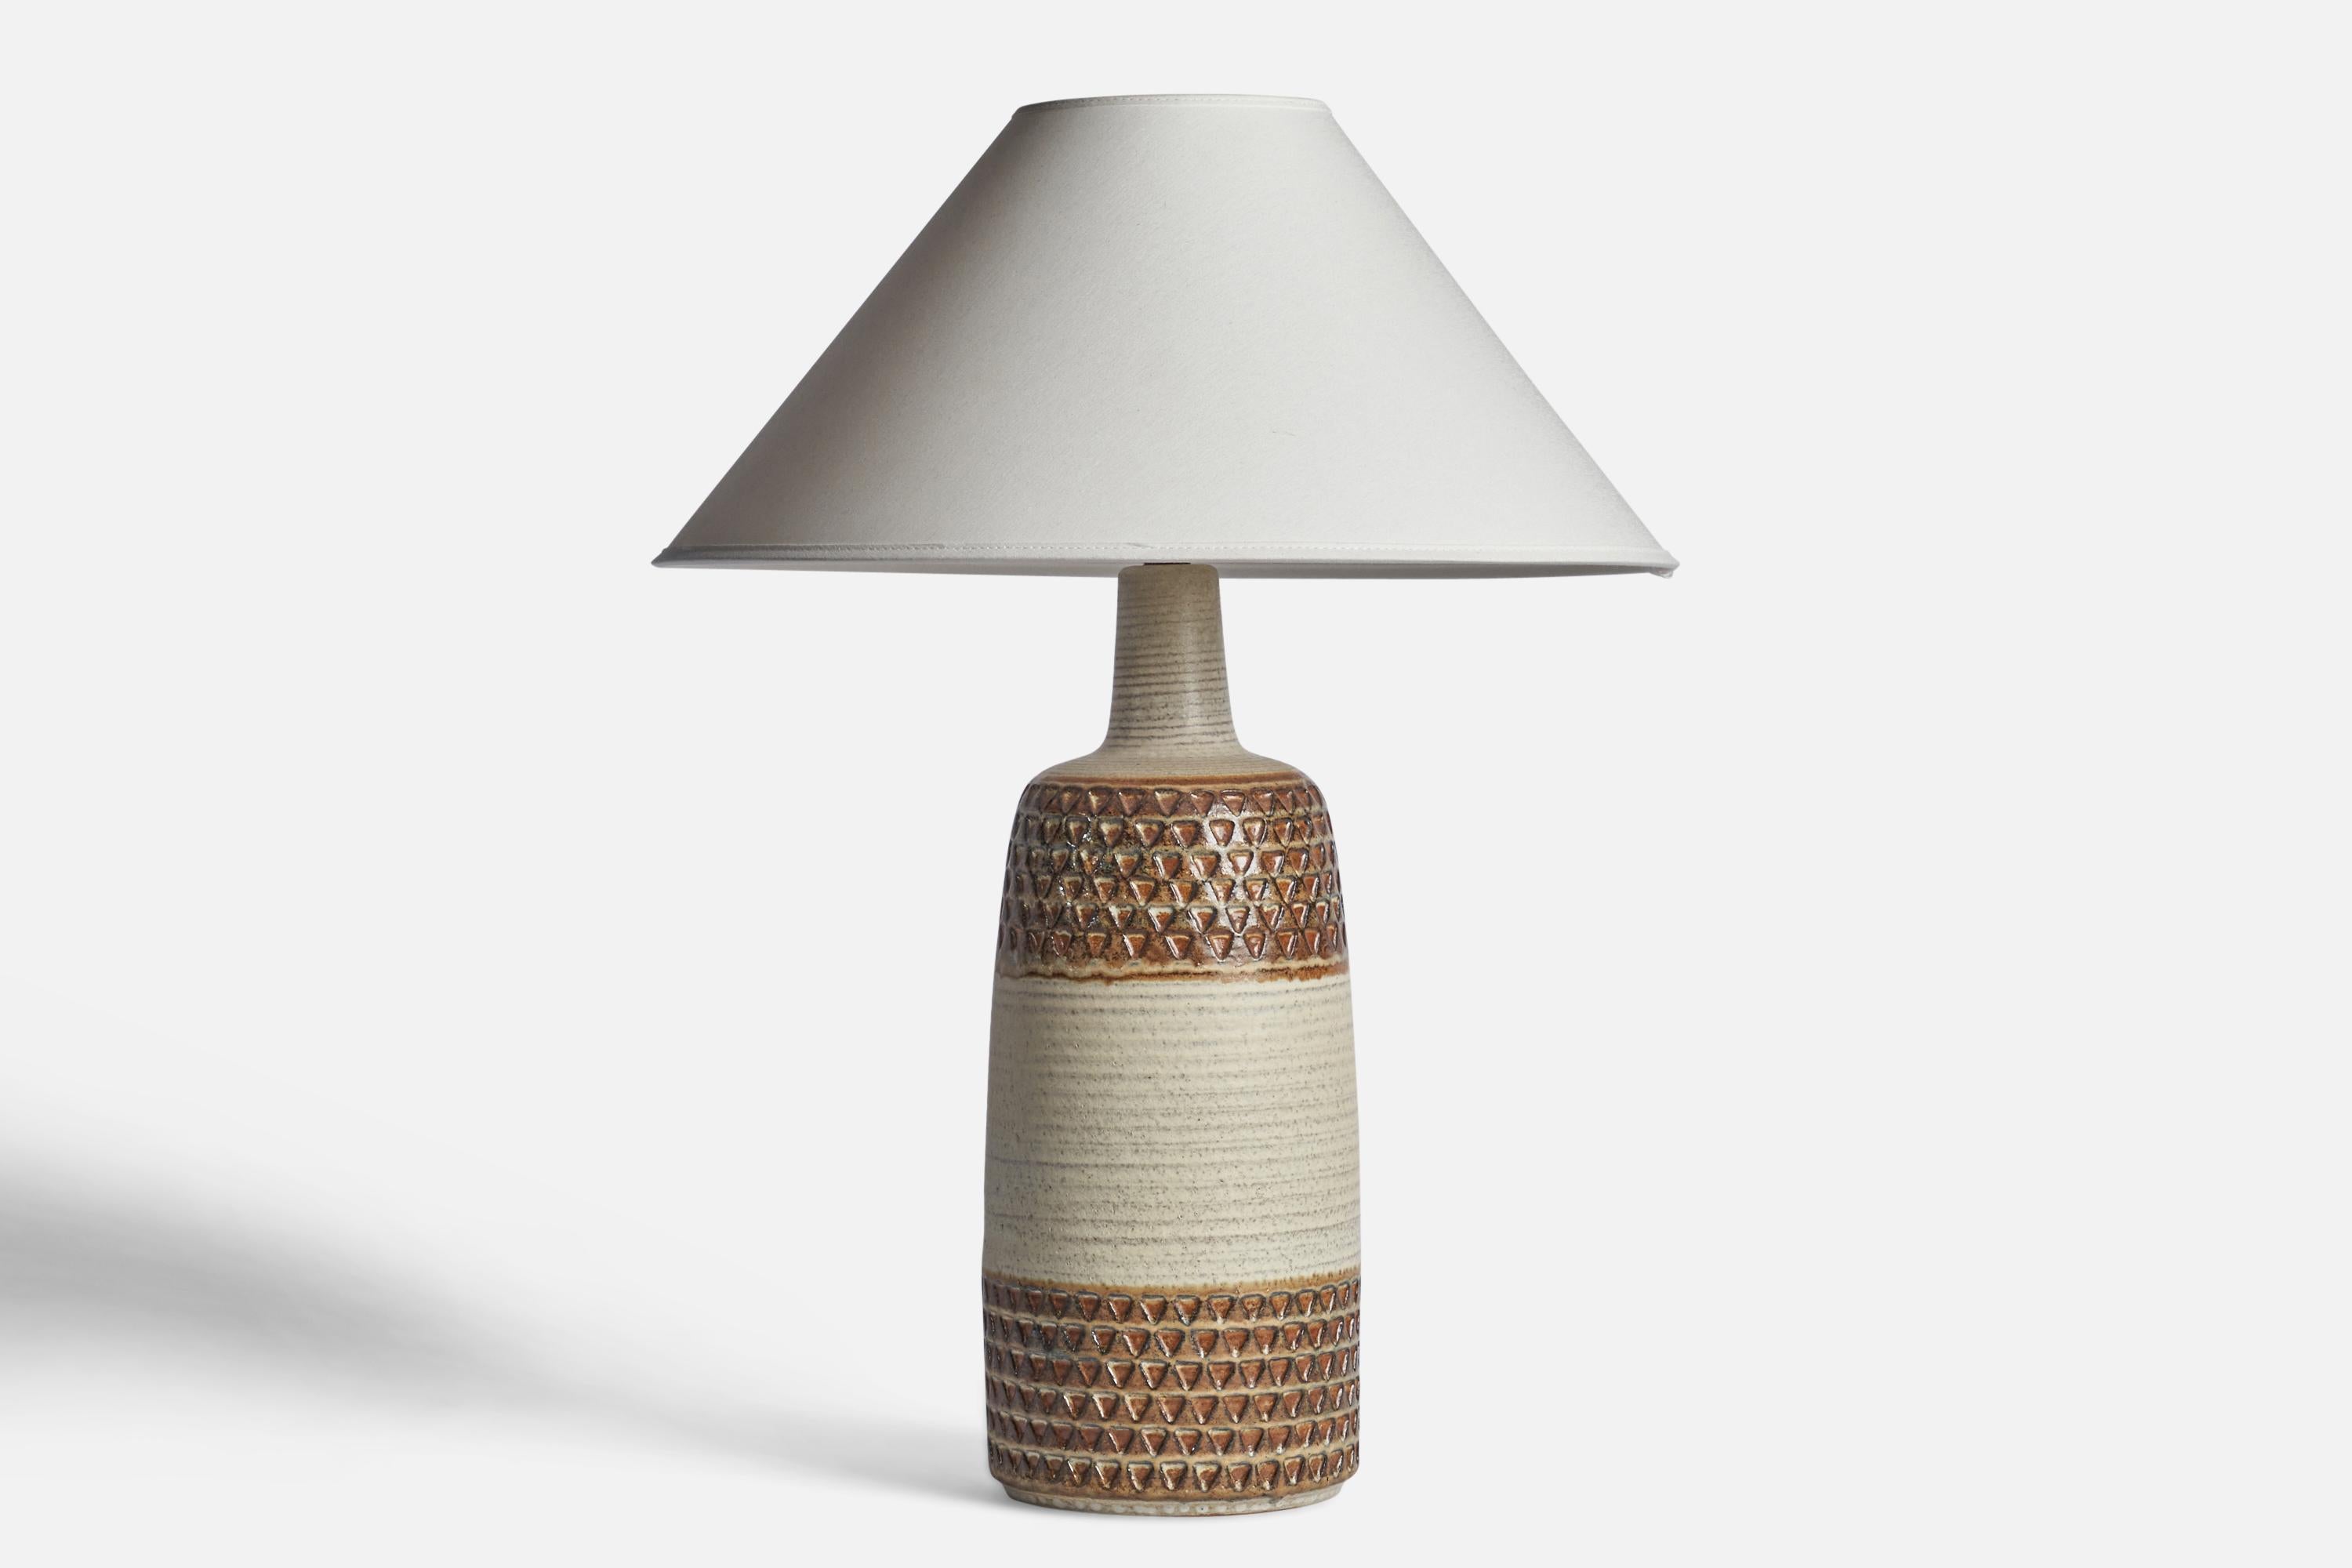 Tischlampe aus braunem und weiß glasiertem Steingut, entworfen und hergestellt von Søholm Keramik, Bornholm, Dänemark, 1960er Jahre.

Abmessungen der Lampe (Zoll): 17